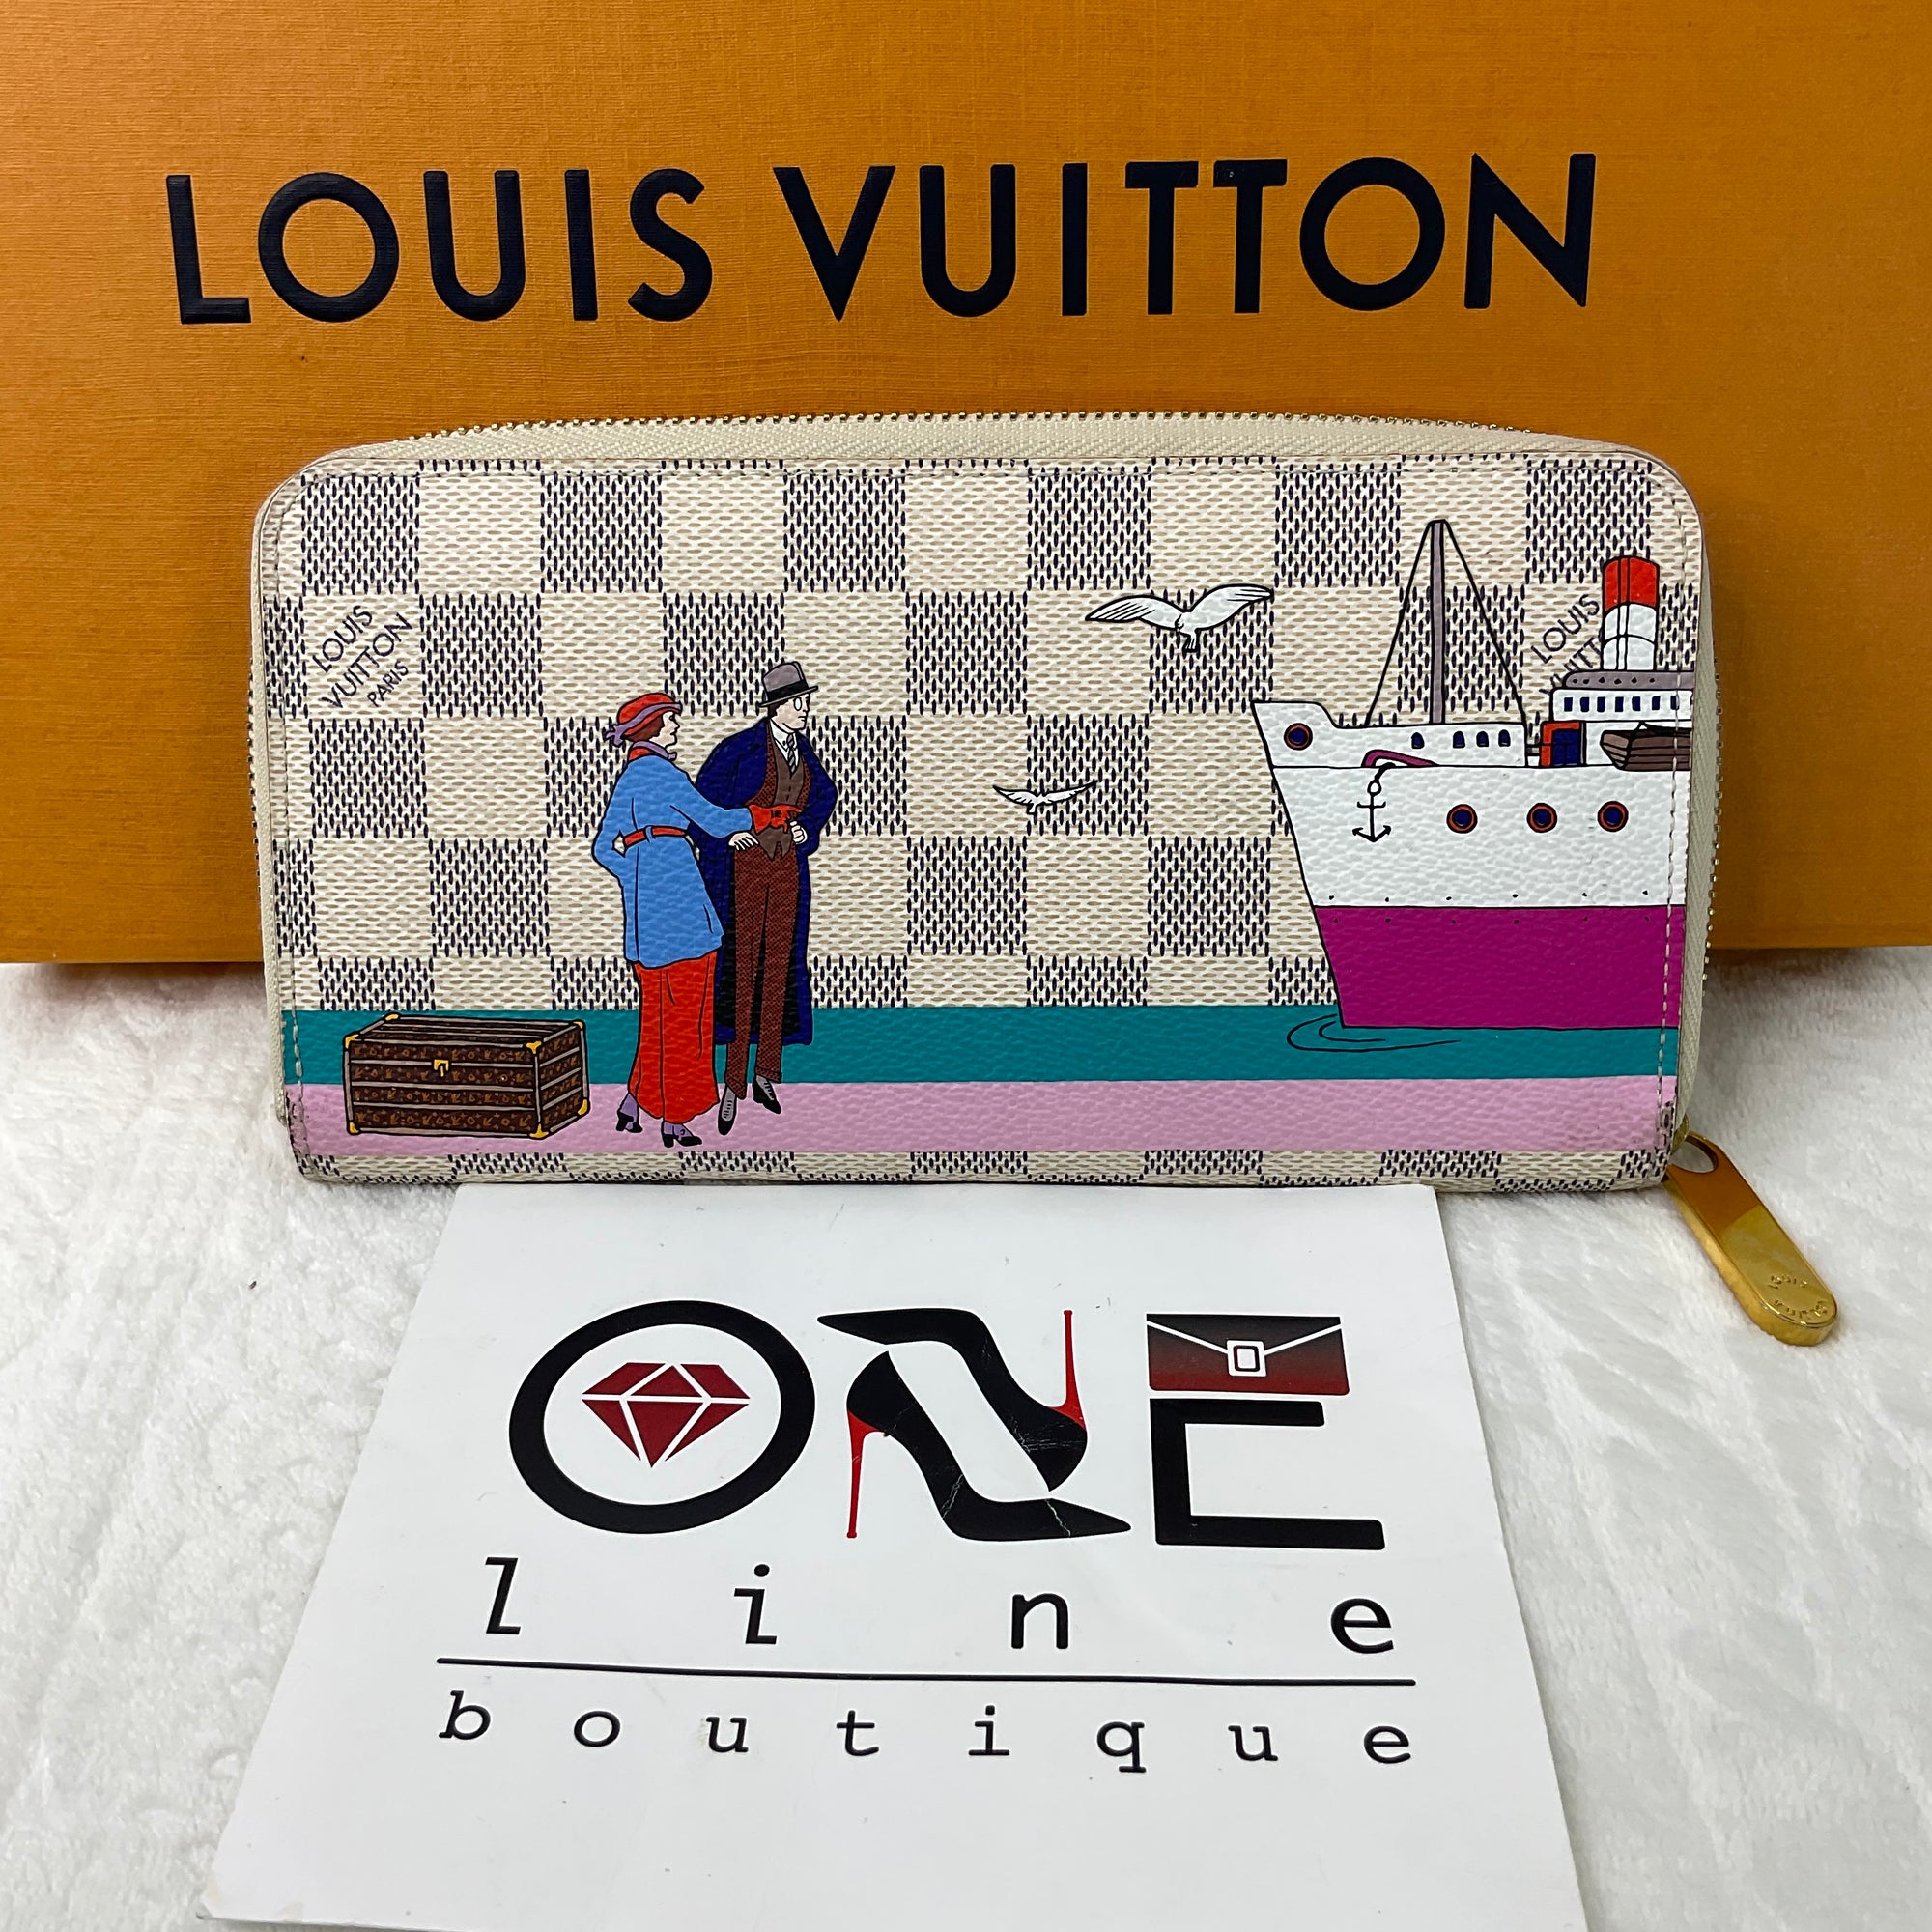 Louis Vuitton Damier Graphite Coated Canvas Zippy Vertical Wallet